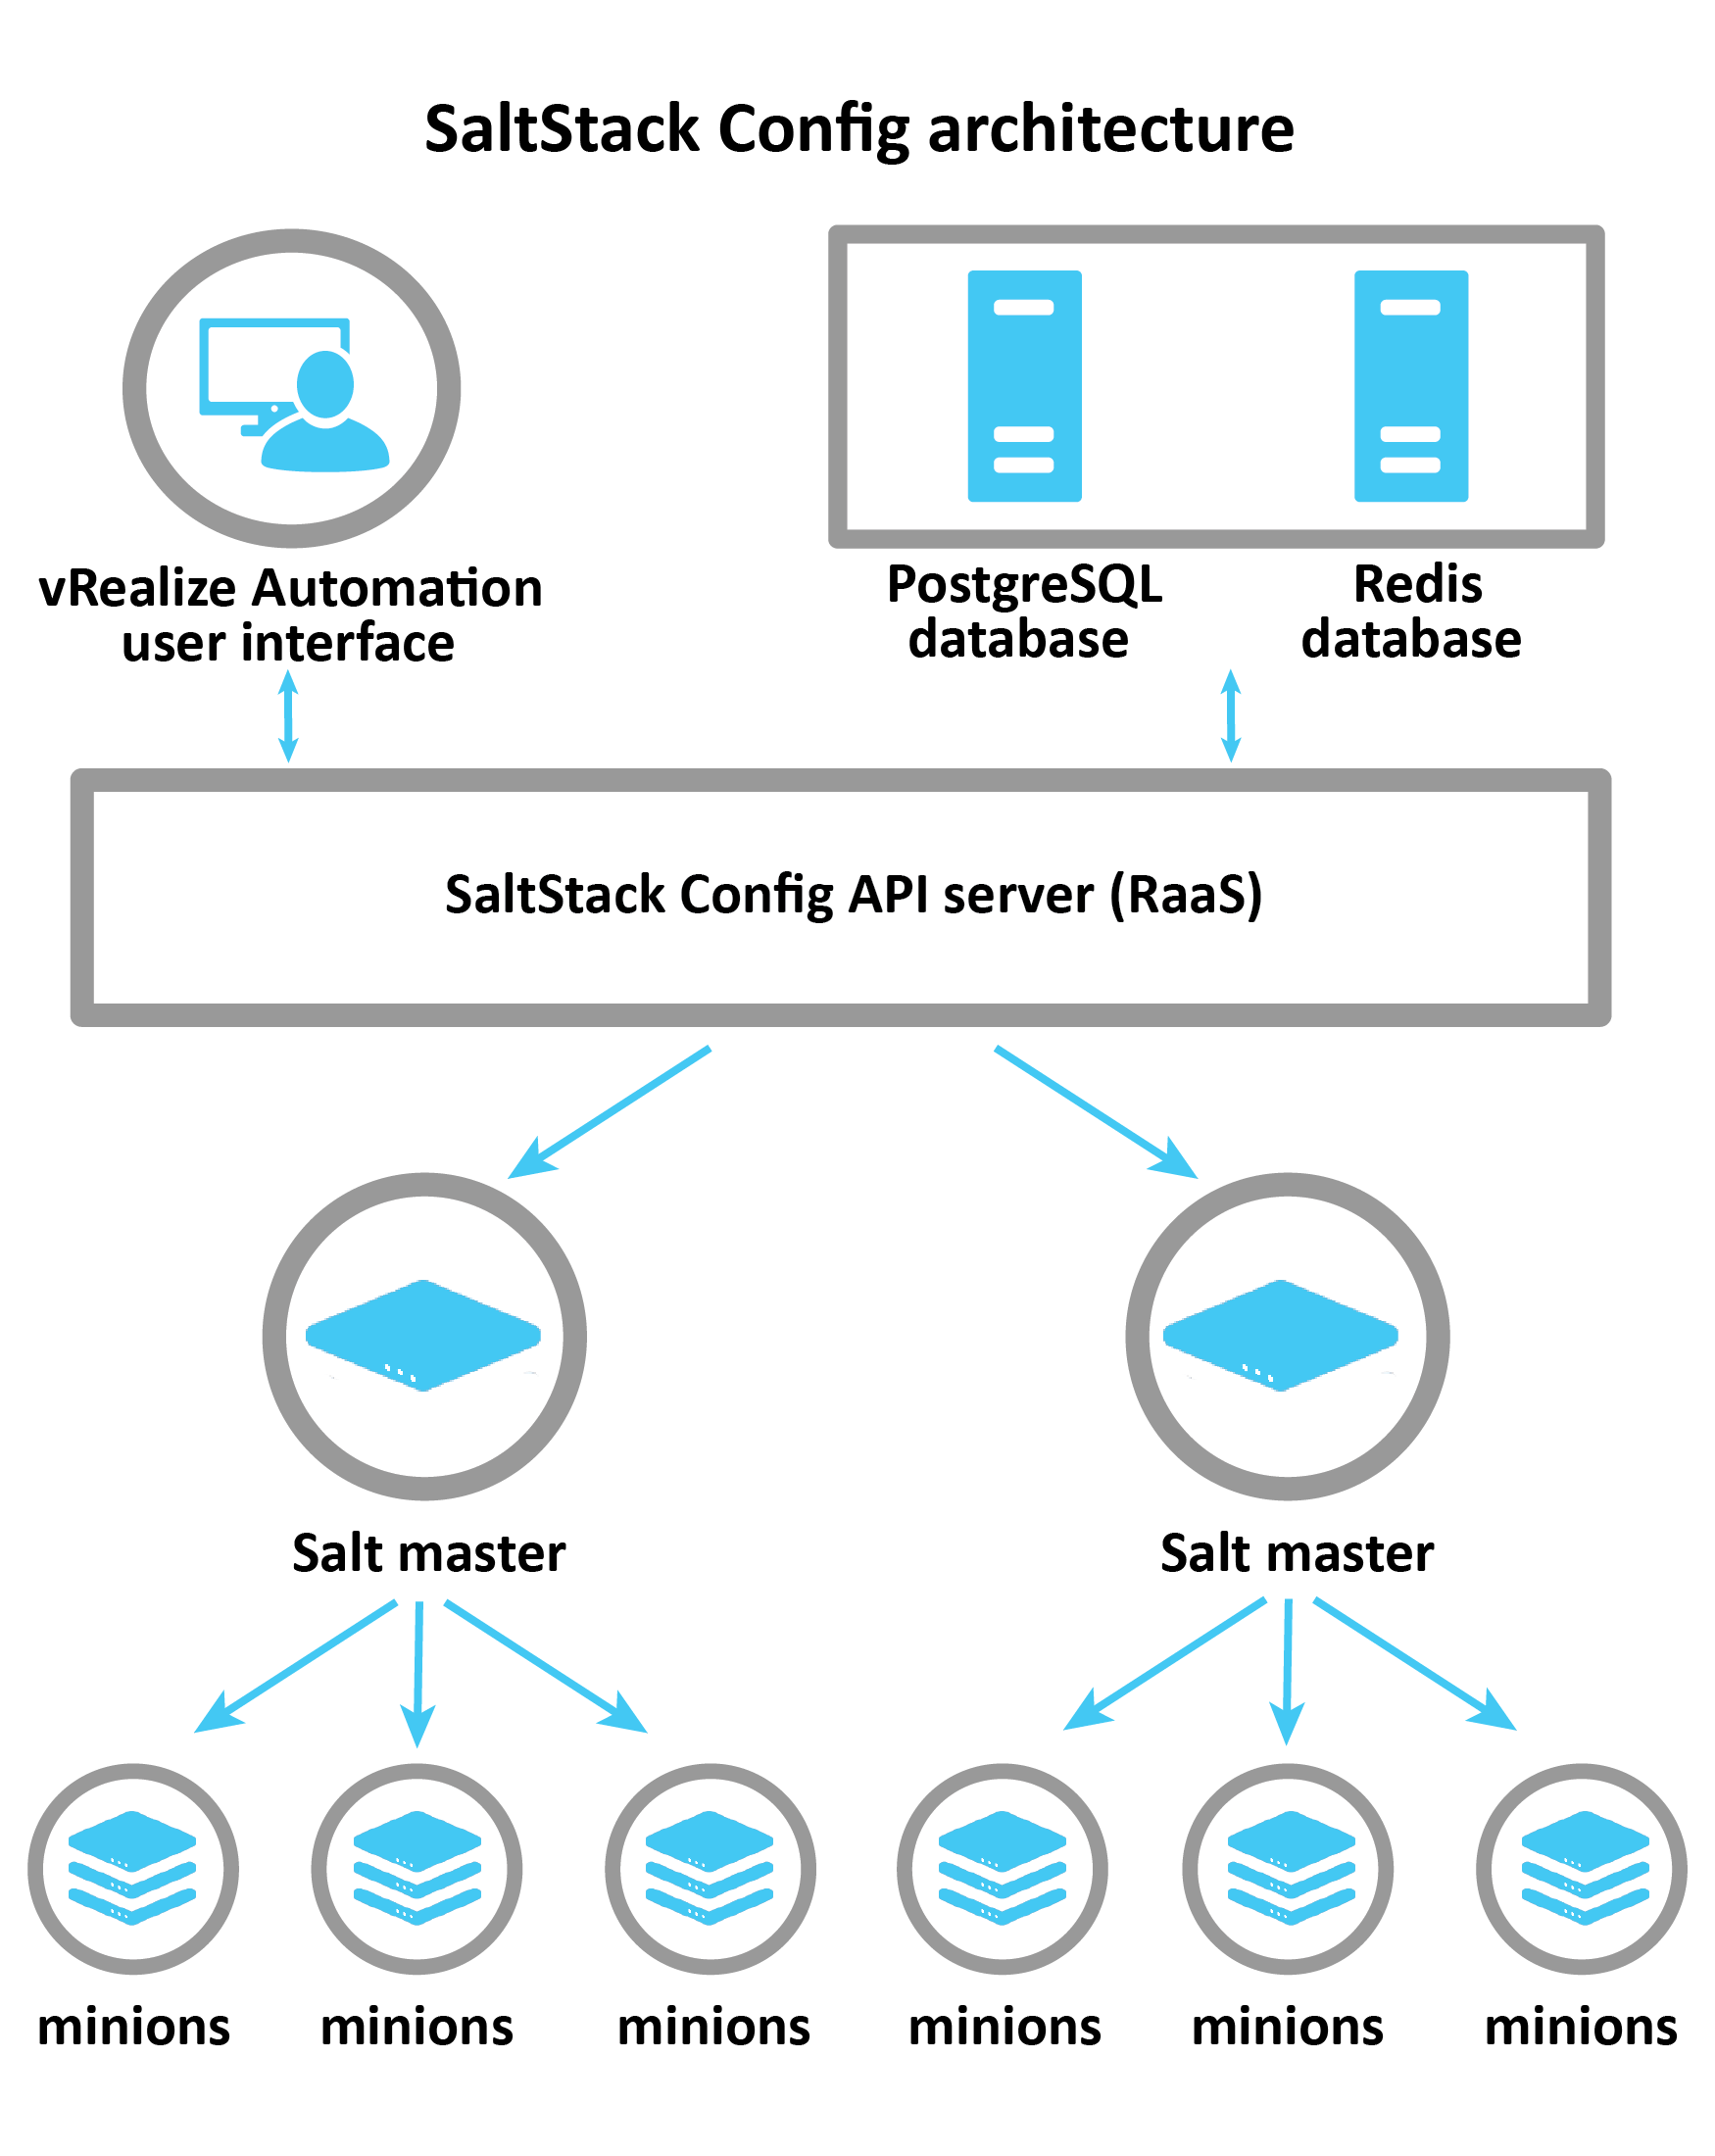 說明 SaltStack Config 架構的圖表：vRA、Postgress 和 Redis 連線至控制 Salt 主節點的 RaaS 伺服器。然後 Salt 主節點將資訊傳遞給各個部屬節點。